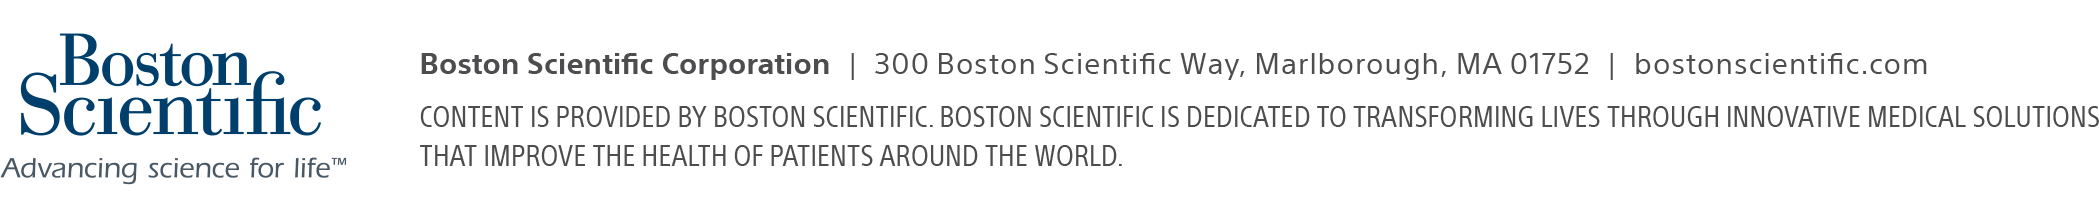 spaceoar-boston-scientific-logo-address.png